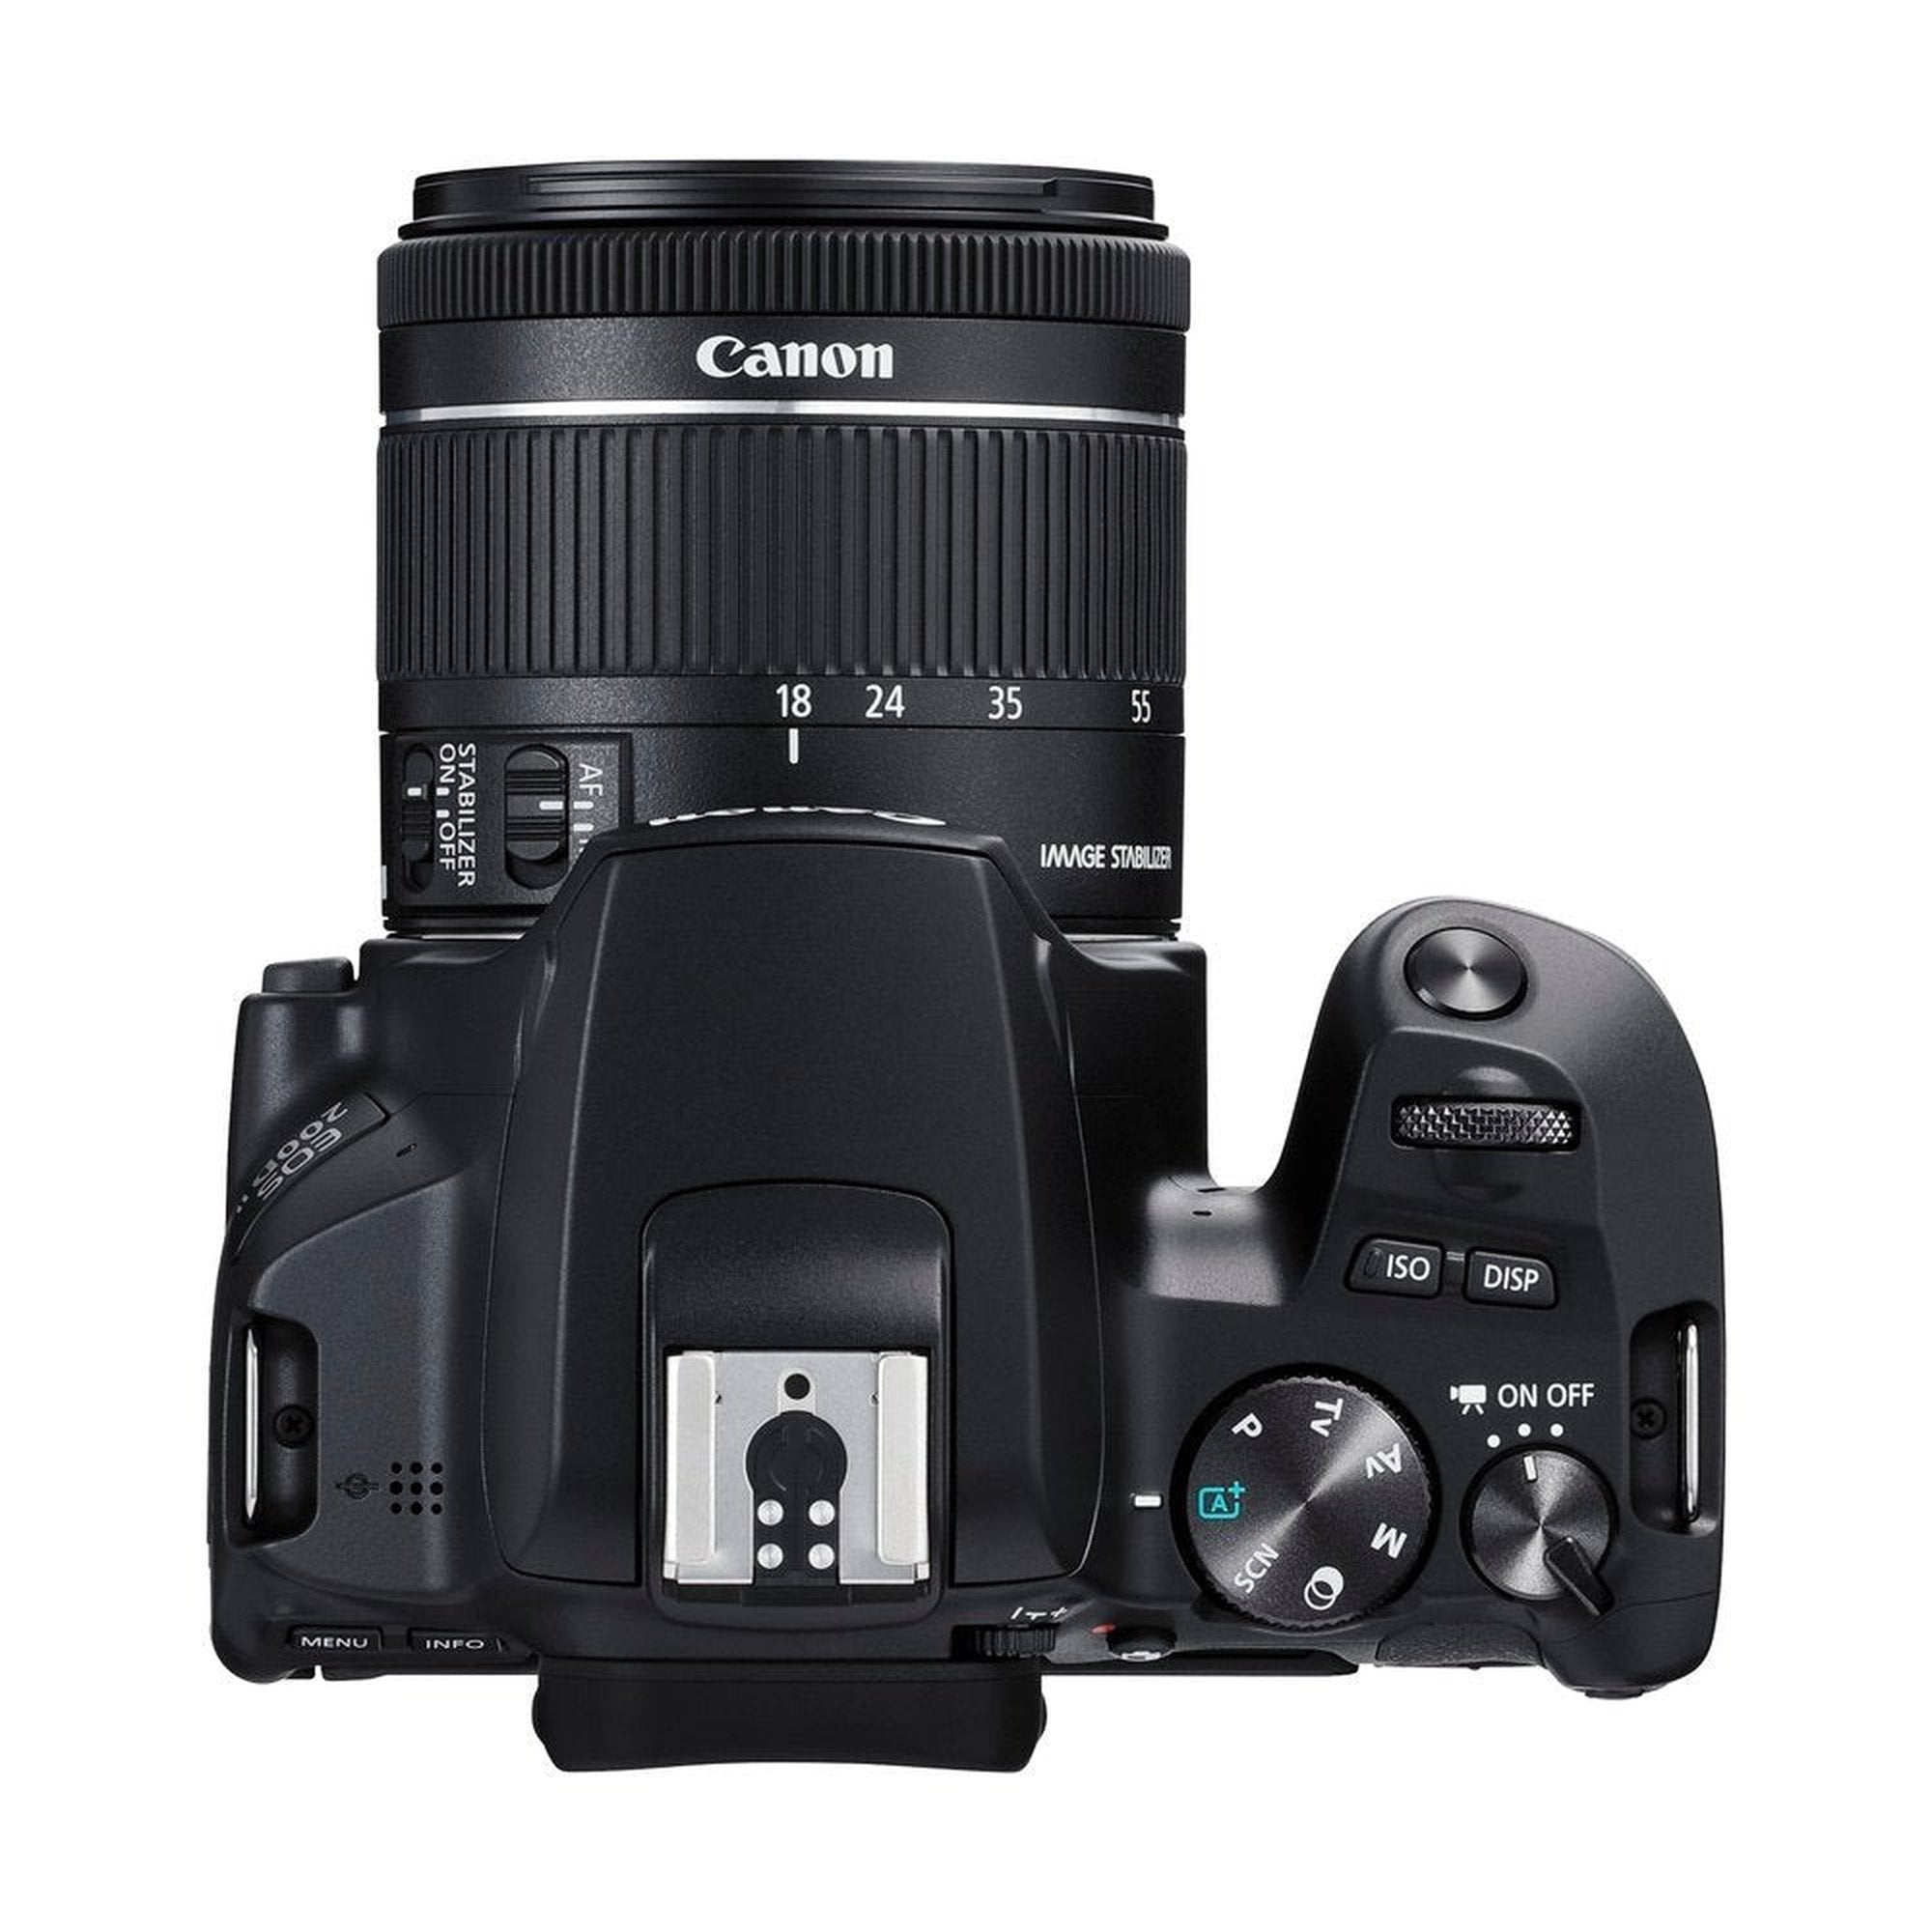 banaan Ontwaken Naar boven Buy Canon EOS 200D II DSLR Camera Online | Canon Flagship Store